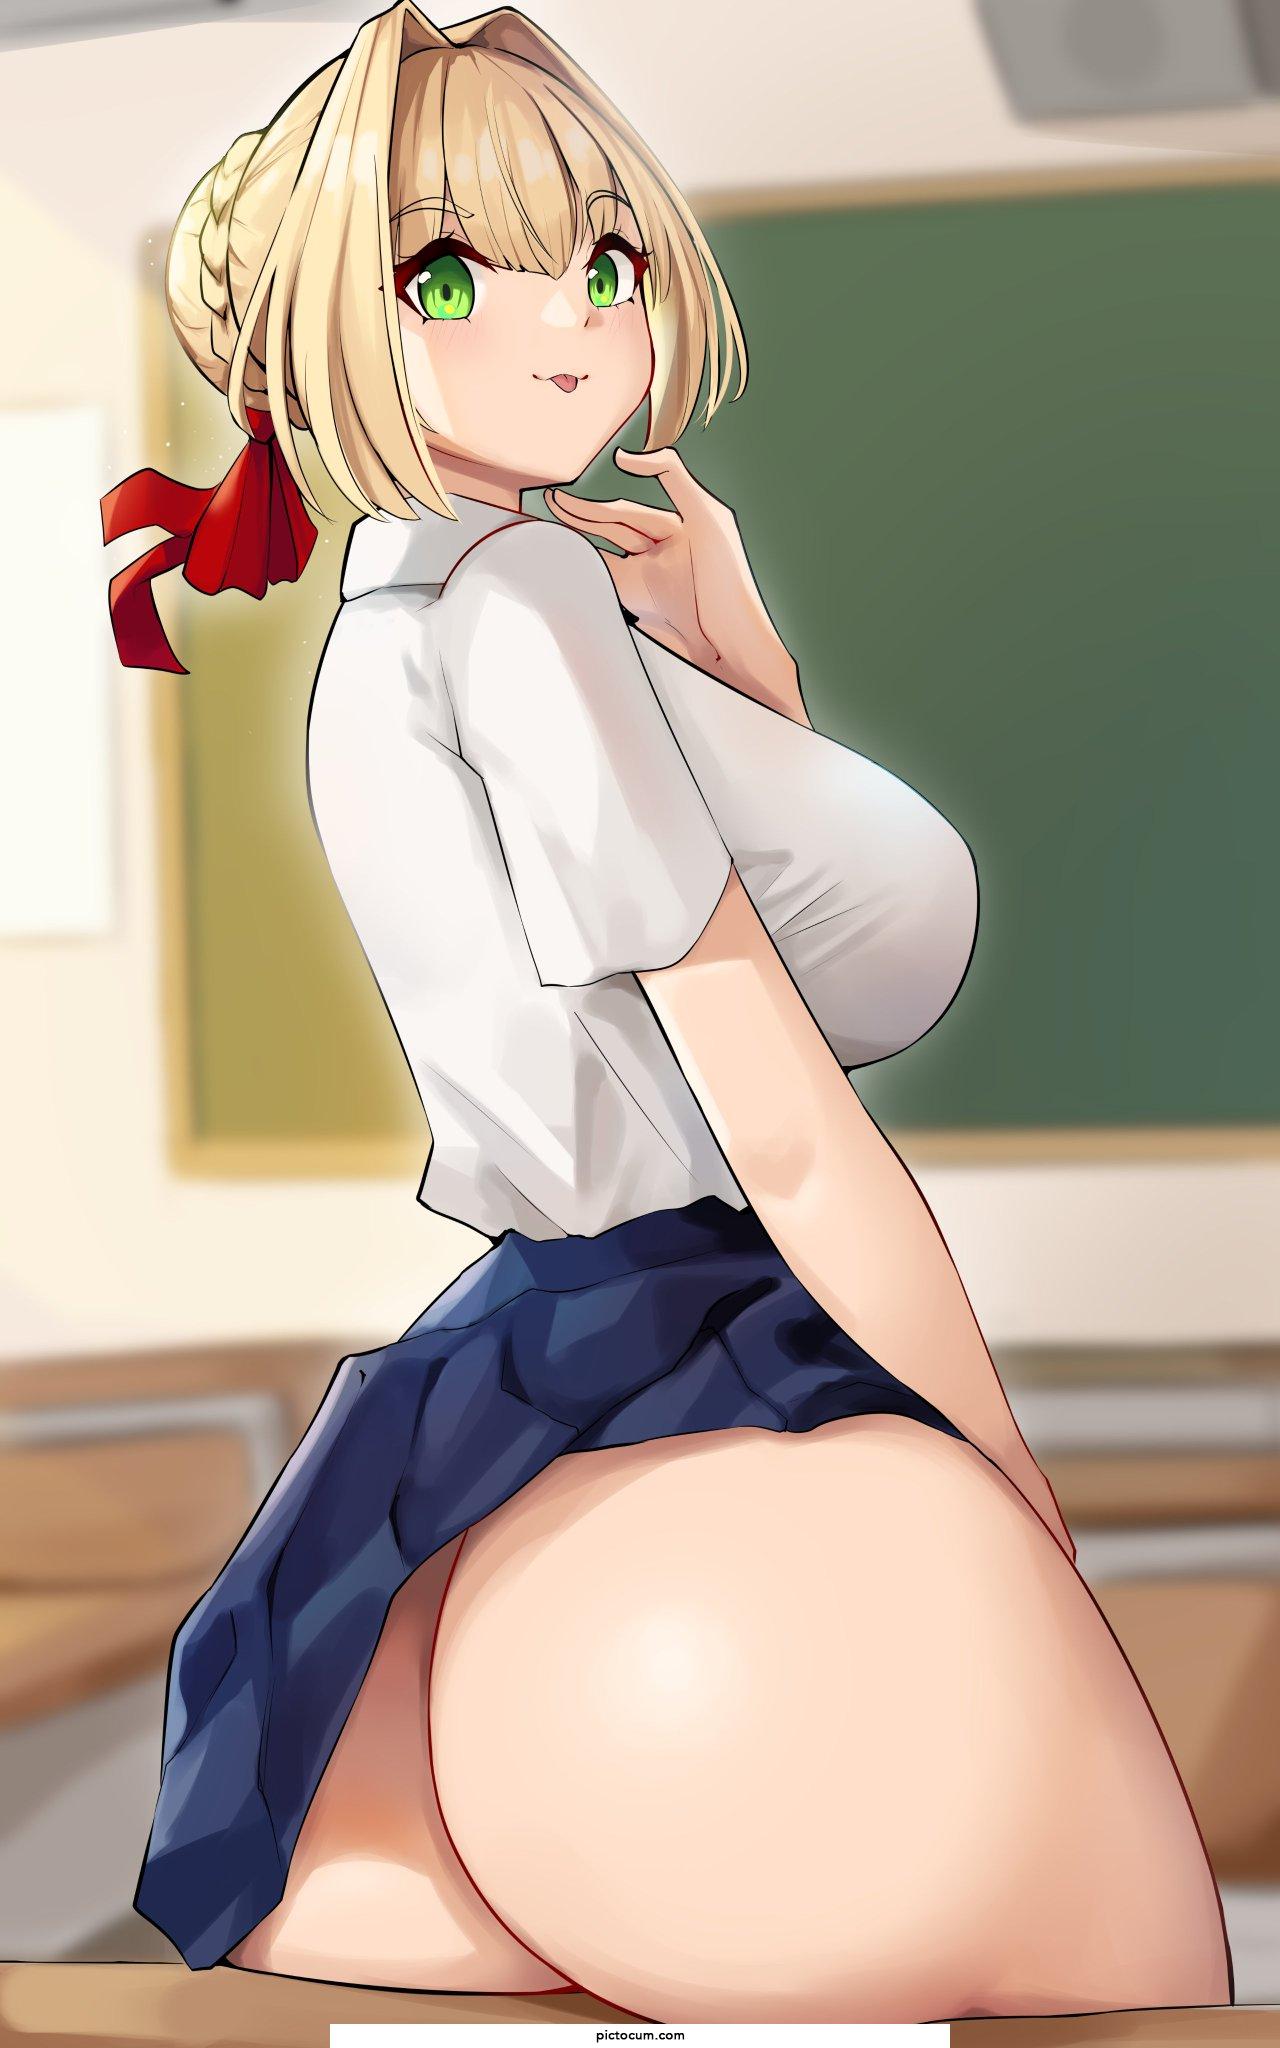 Nero's butt